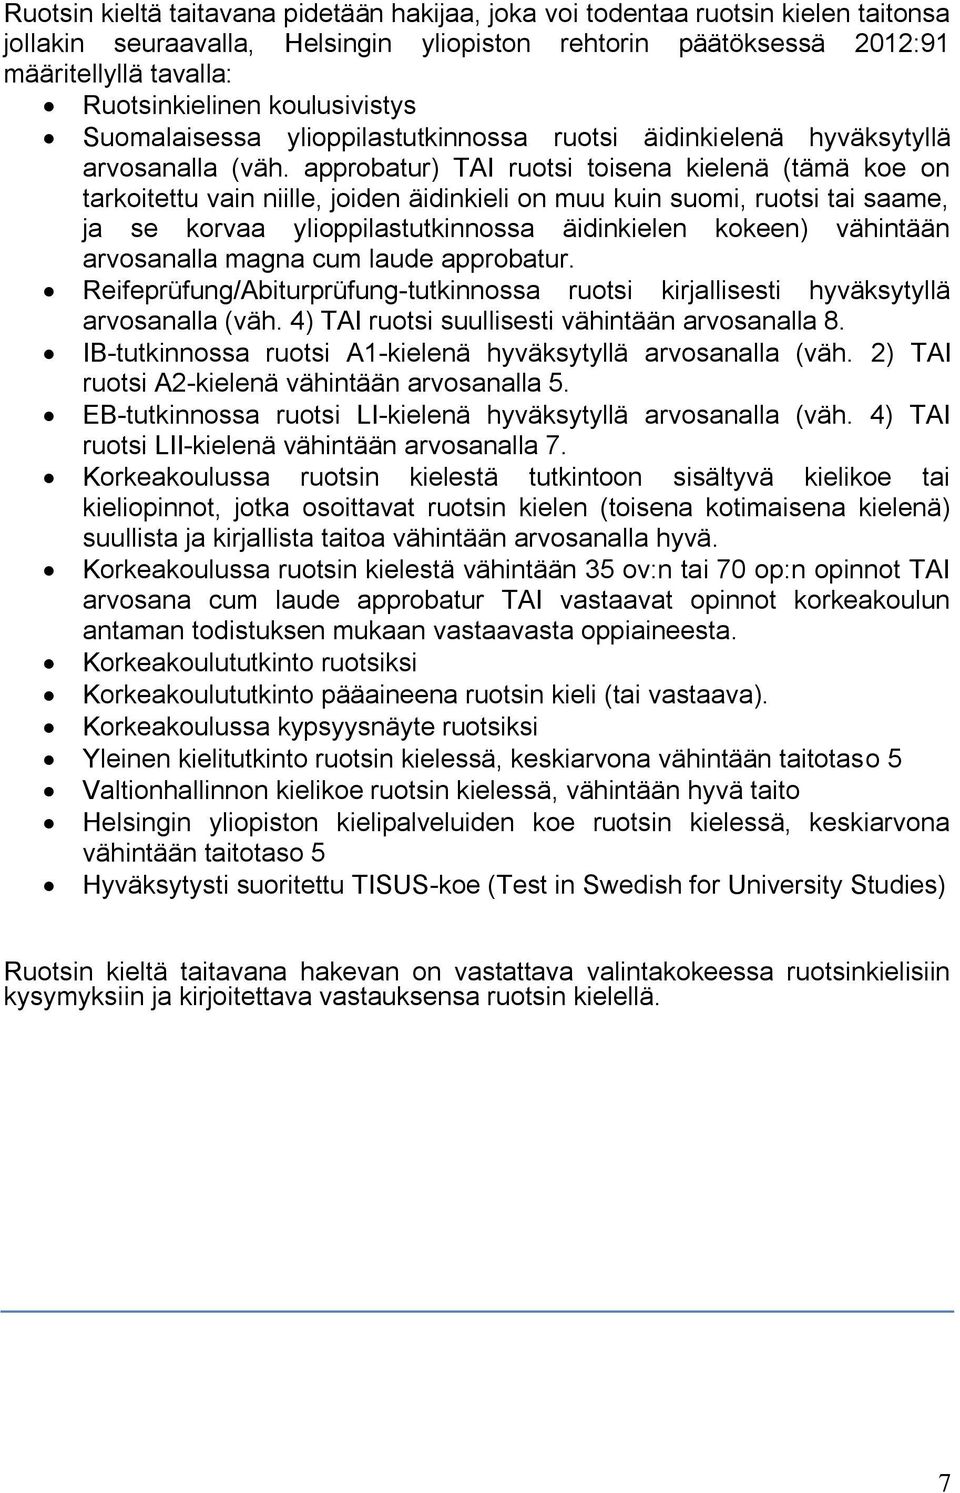 approbatur) TAI ruotsi toisena kielenä (tämä koe on tarkoitettu vain niille, joiden äidinkieli on muu kuin suomi, ruotsi tai saame, ja se korvaa ylioppilastutkinnossa äidinkielen kokeen) vähintään